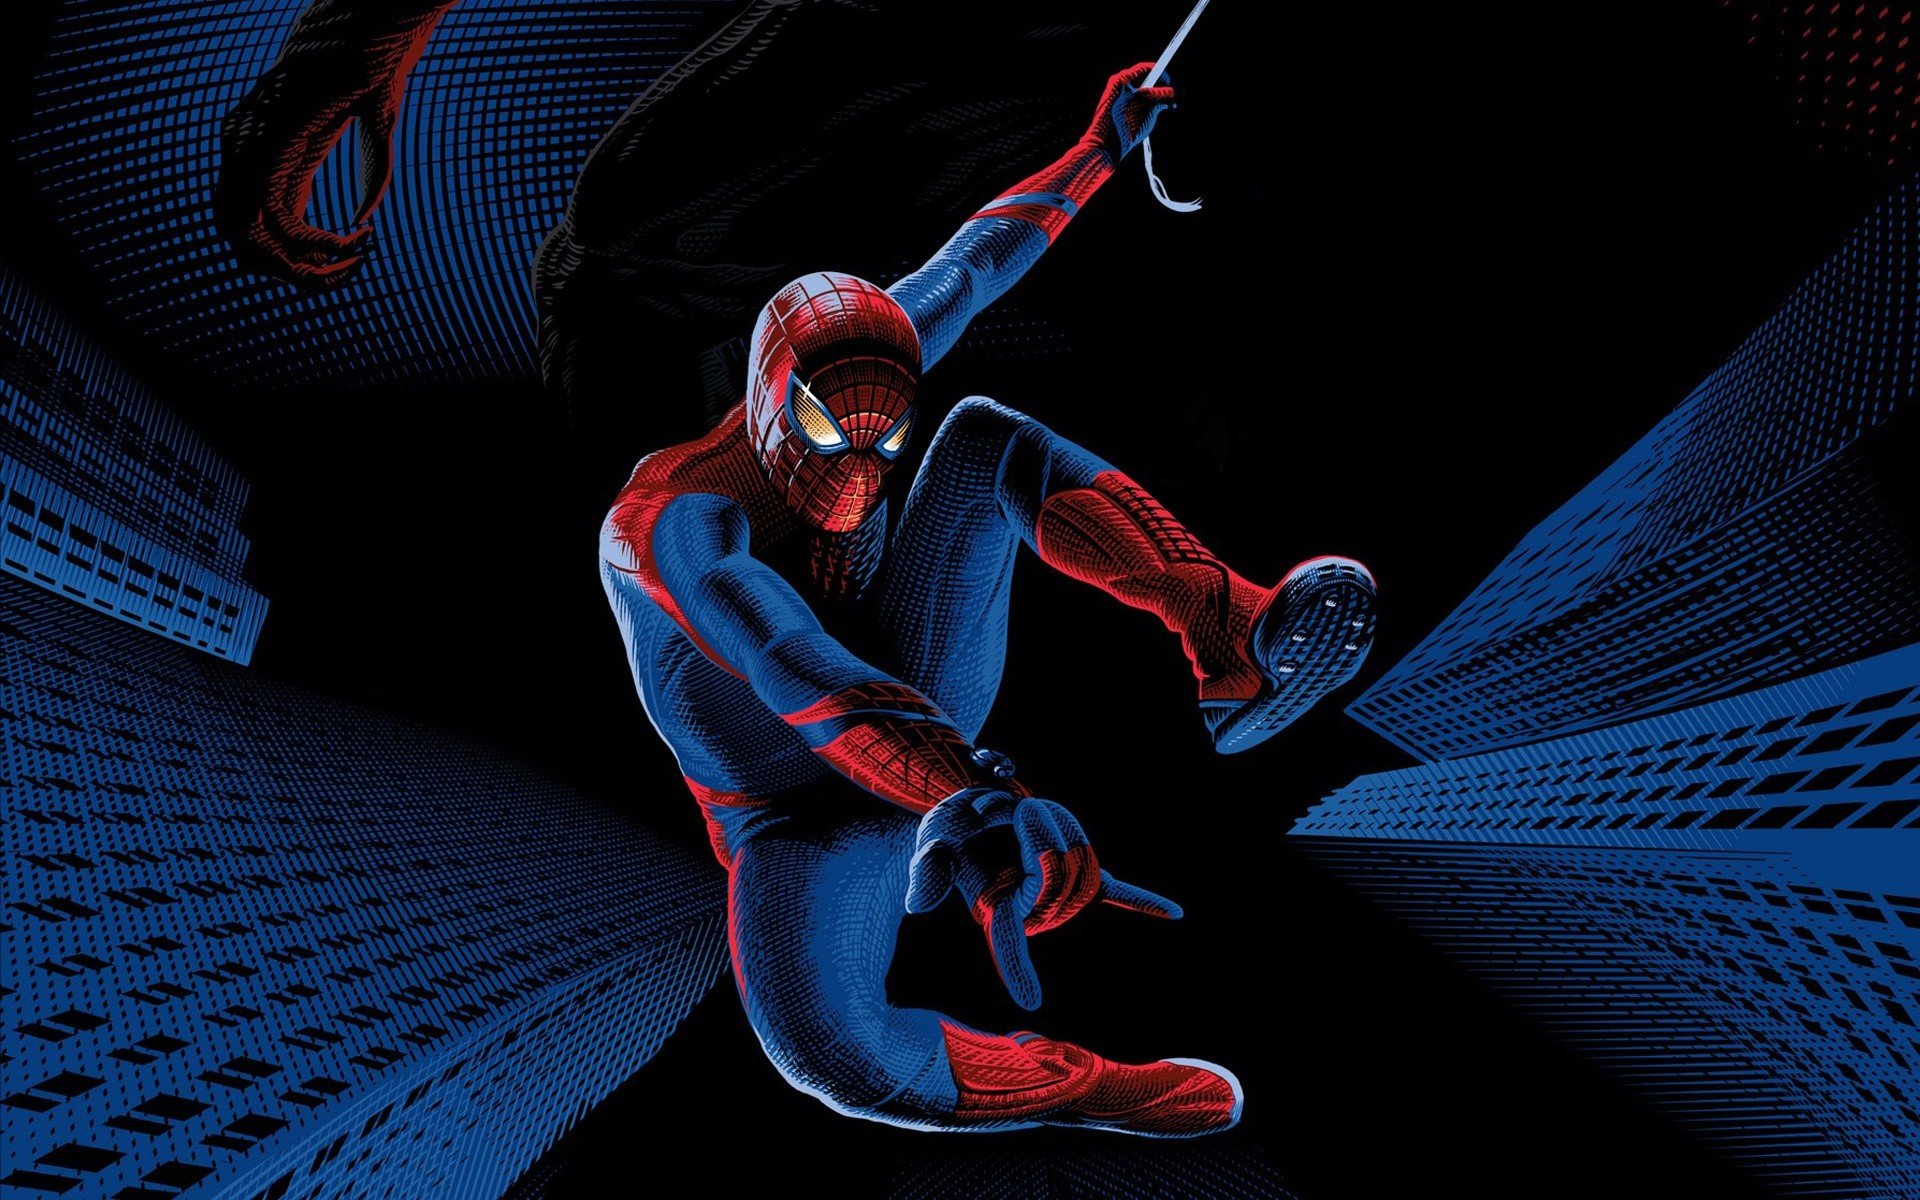 Best Spider-Man Movie wallpaper ID:196093 for High Resolution hd 1920x1200 desktop